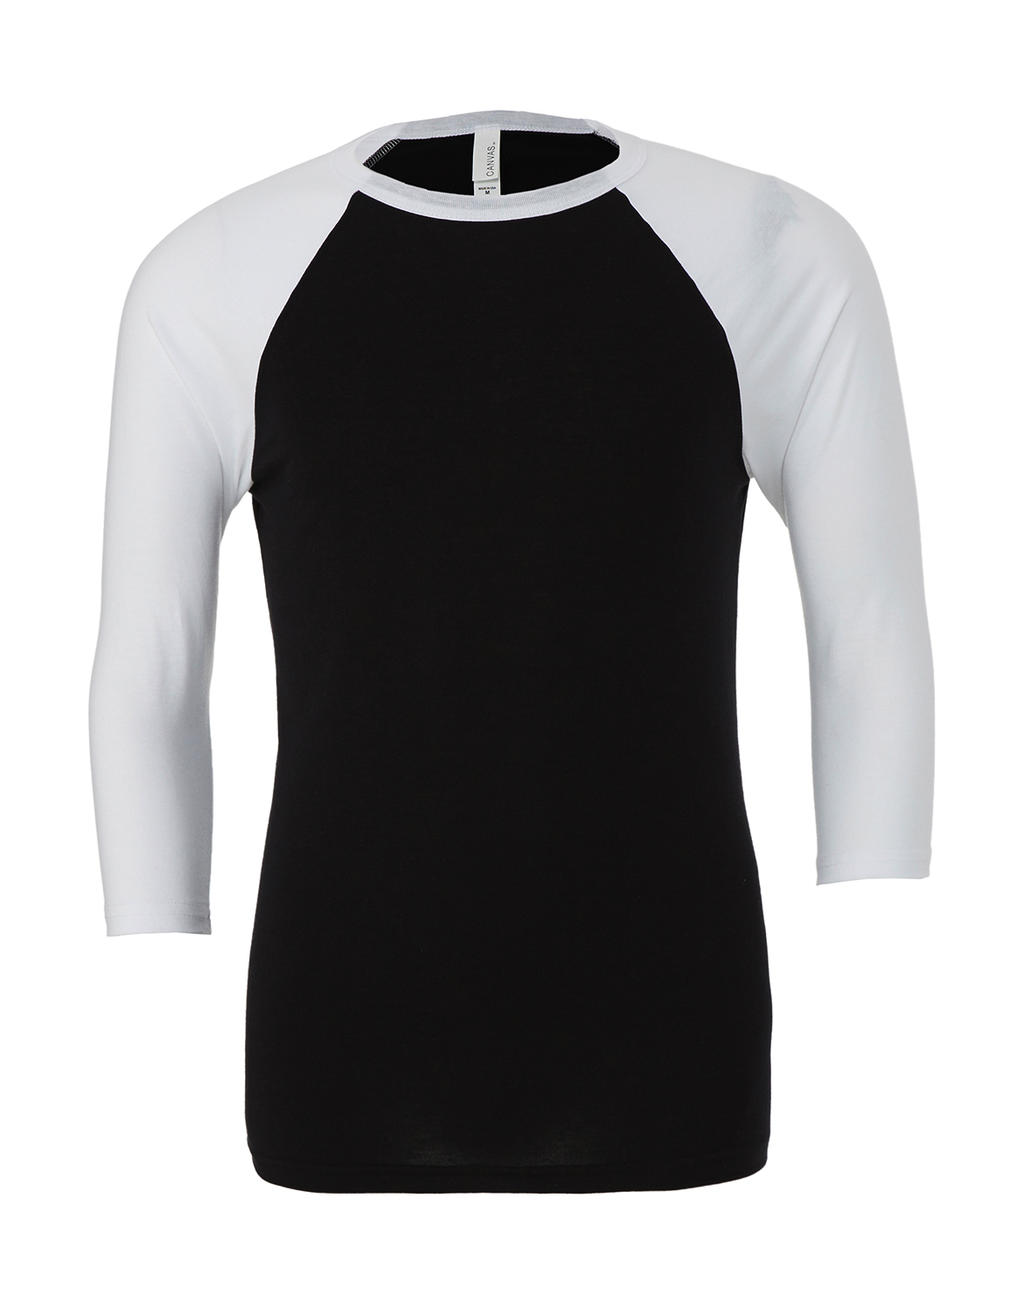  Unisex 3/4 Sleeve Baseball T-Shirt in Farbe Black/White